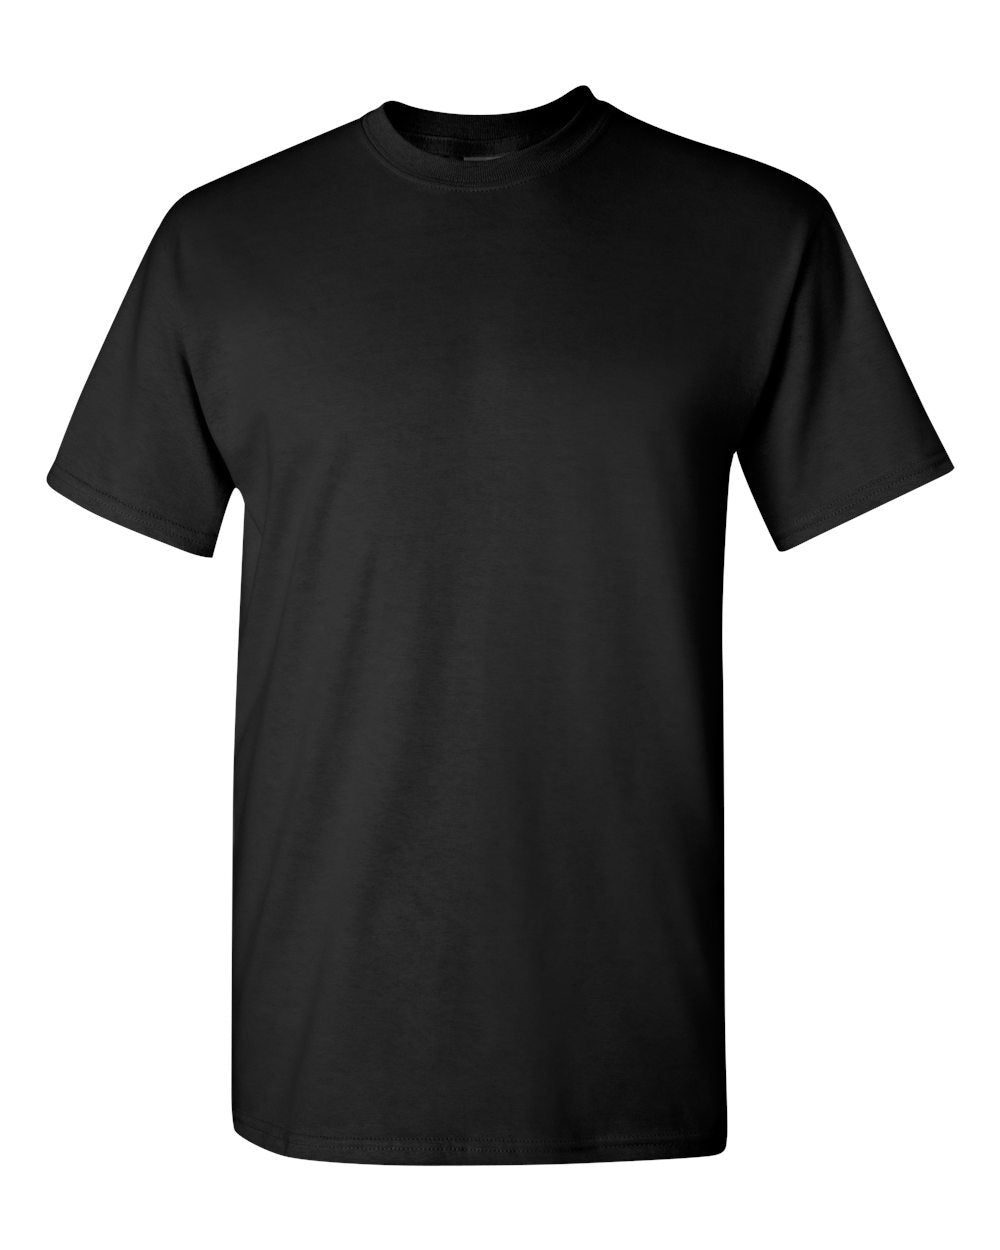 Seltzer Slut Adult Unisex Cotton T-Shirt - 1